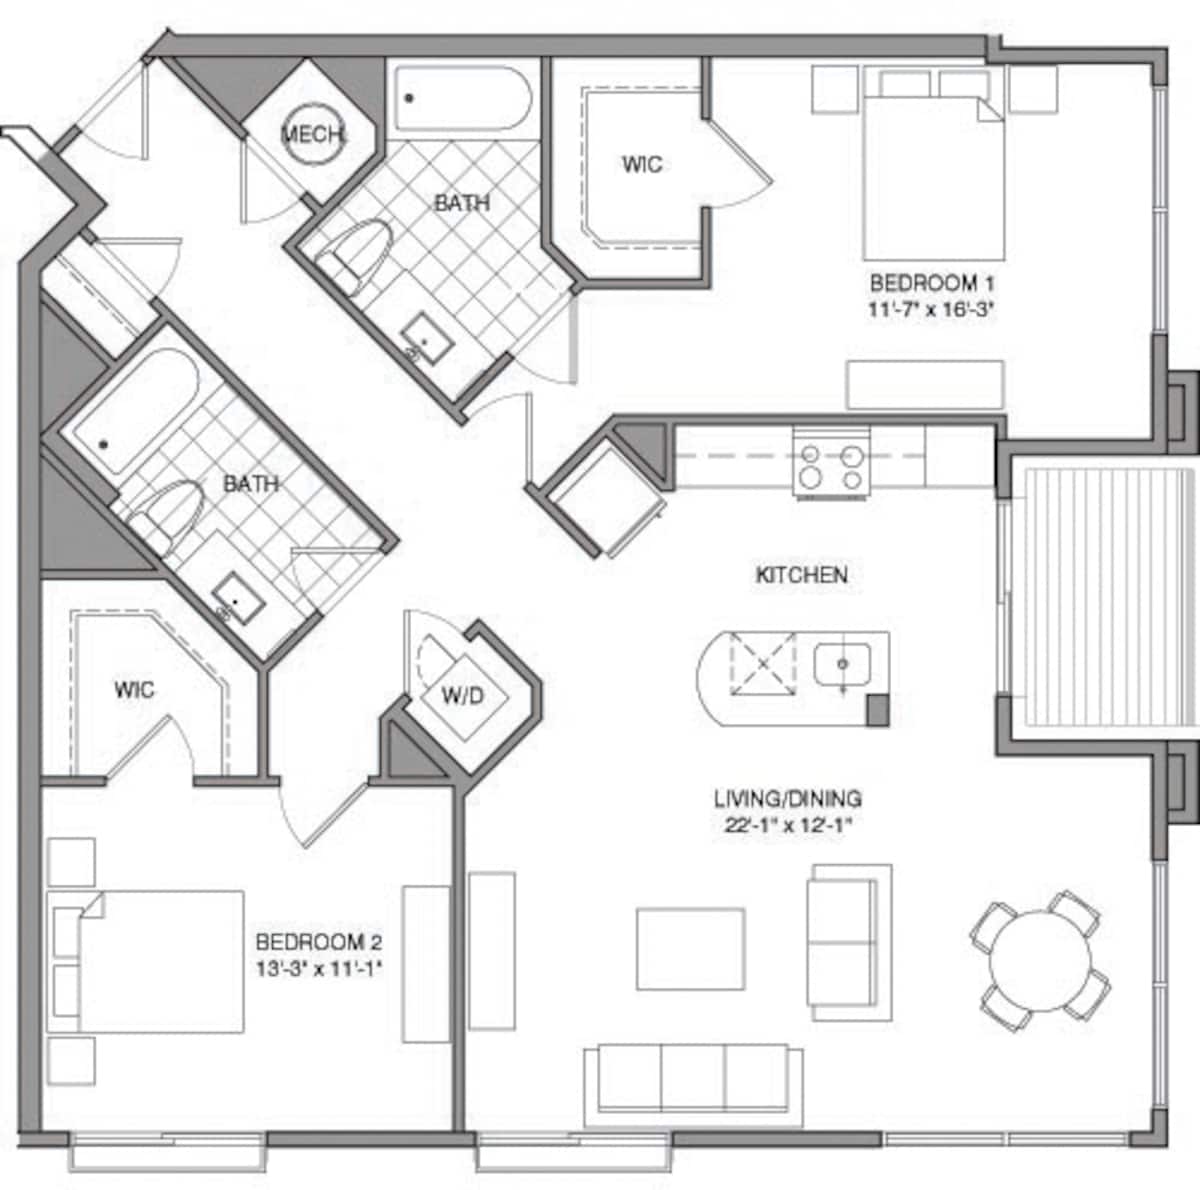 Floorplan diagram for 2 Bdrm I, showing 2 bedroom